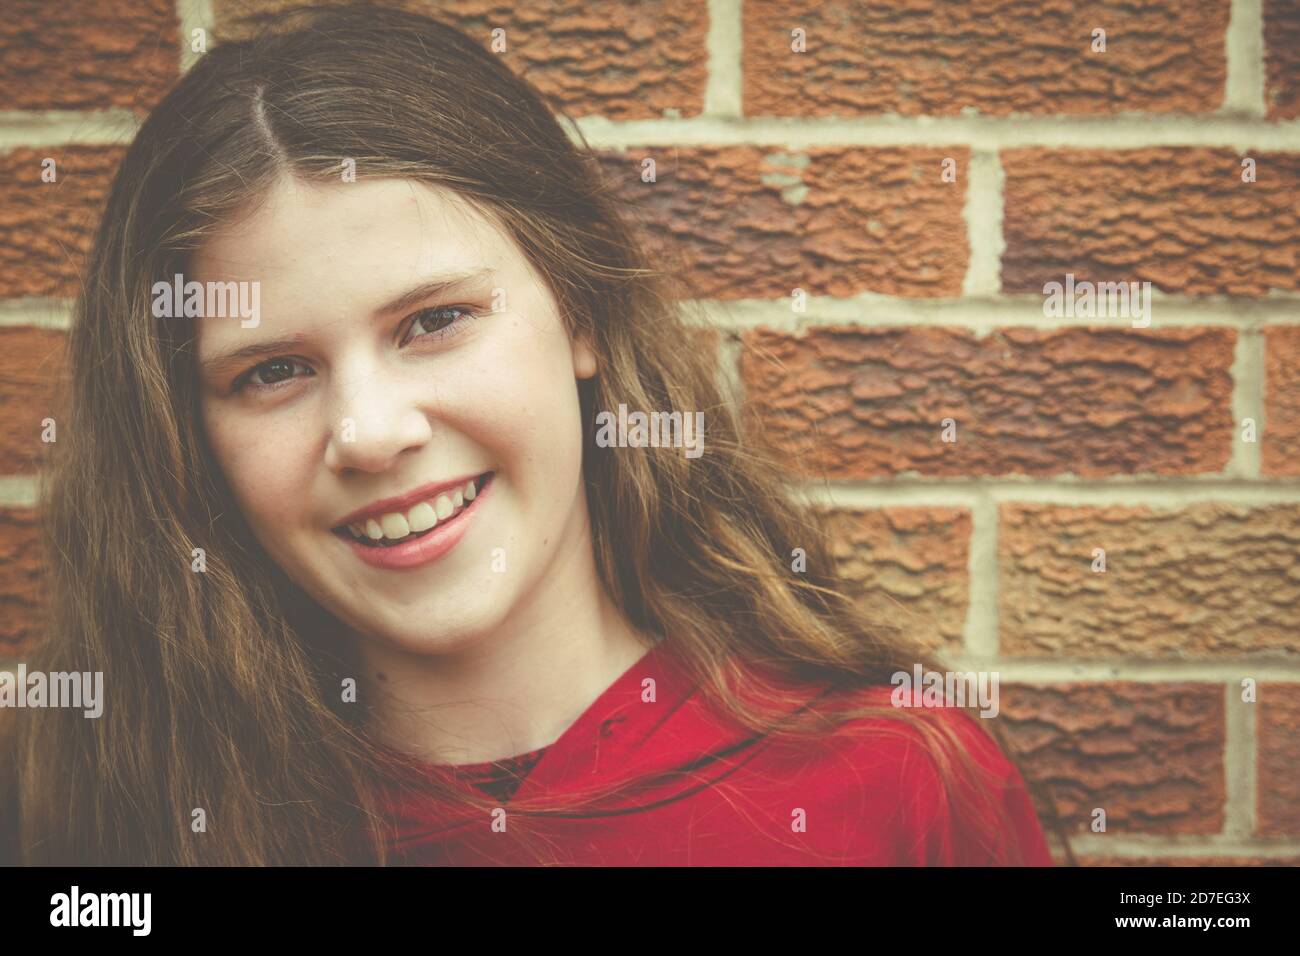 Bel ritratto naturale della ragazza adolescente con lunghi capelli marroni guardando la macchina fotografica con il sorriso che mostra i denti contro la parete di mattoni Foto Stock